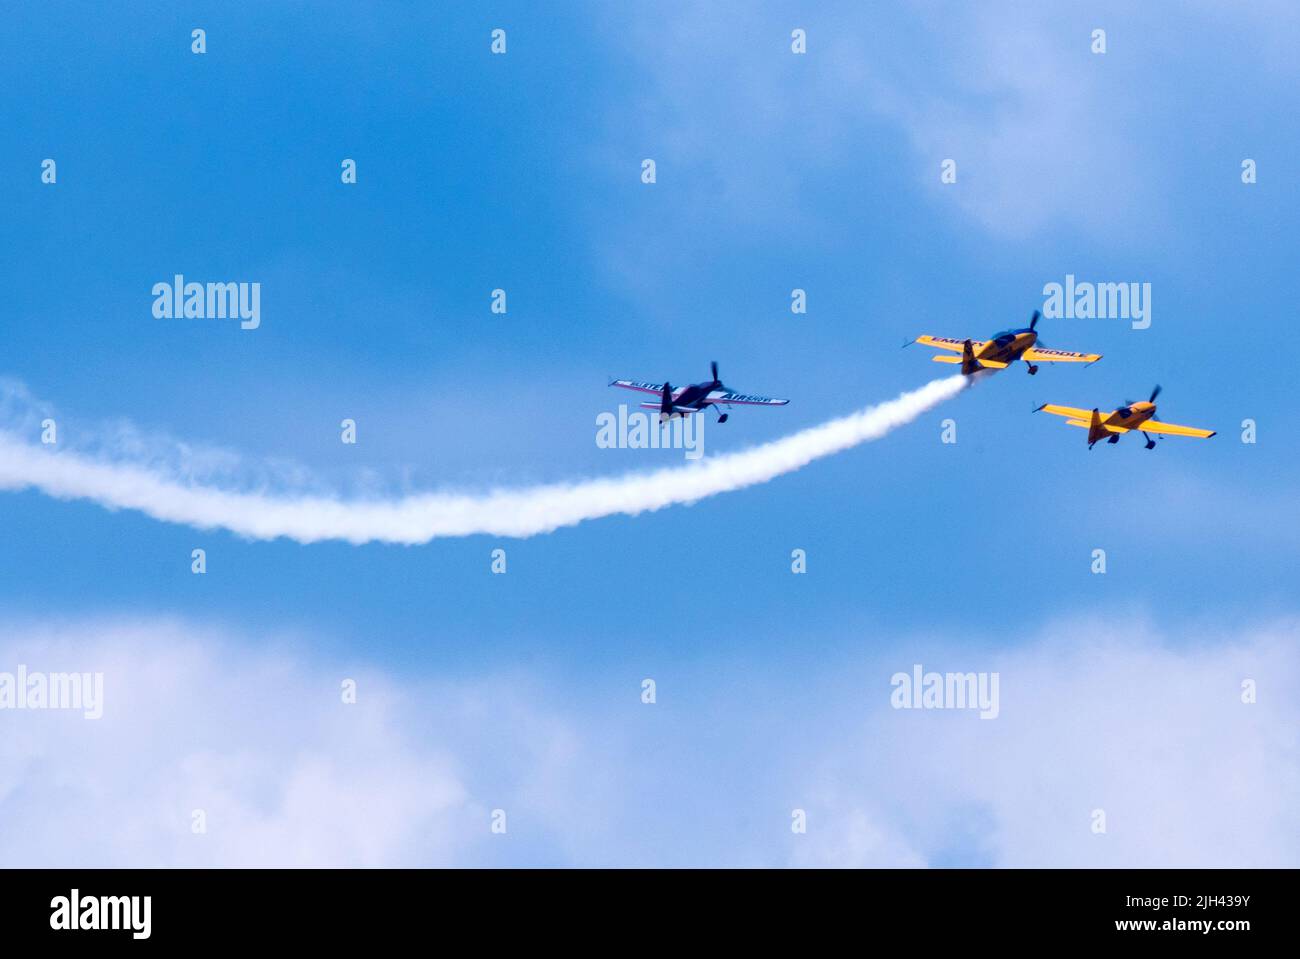 11 juillet 2019 Battle creek Michigan États-Unis ; des avions volent en formation lors d'un spectacle de cascades aériennes au Michigan Banque D'Images